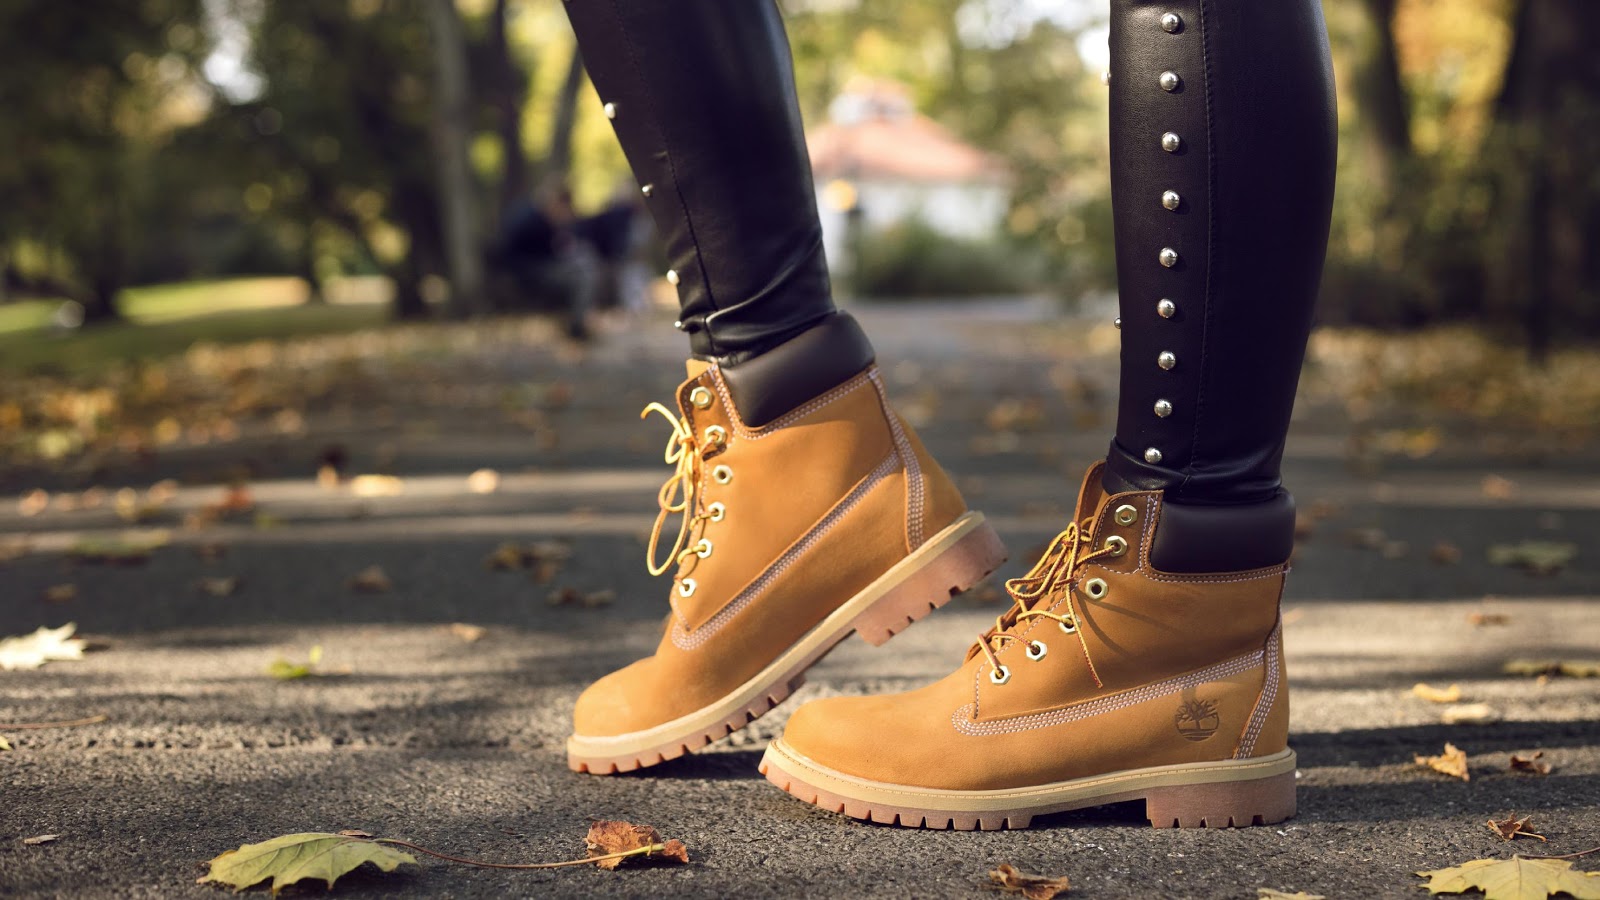 limpiar botas mantener la más alta calidad? | Blog zapatos.es